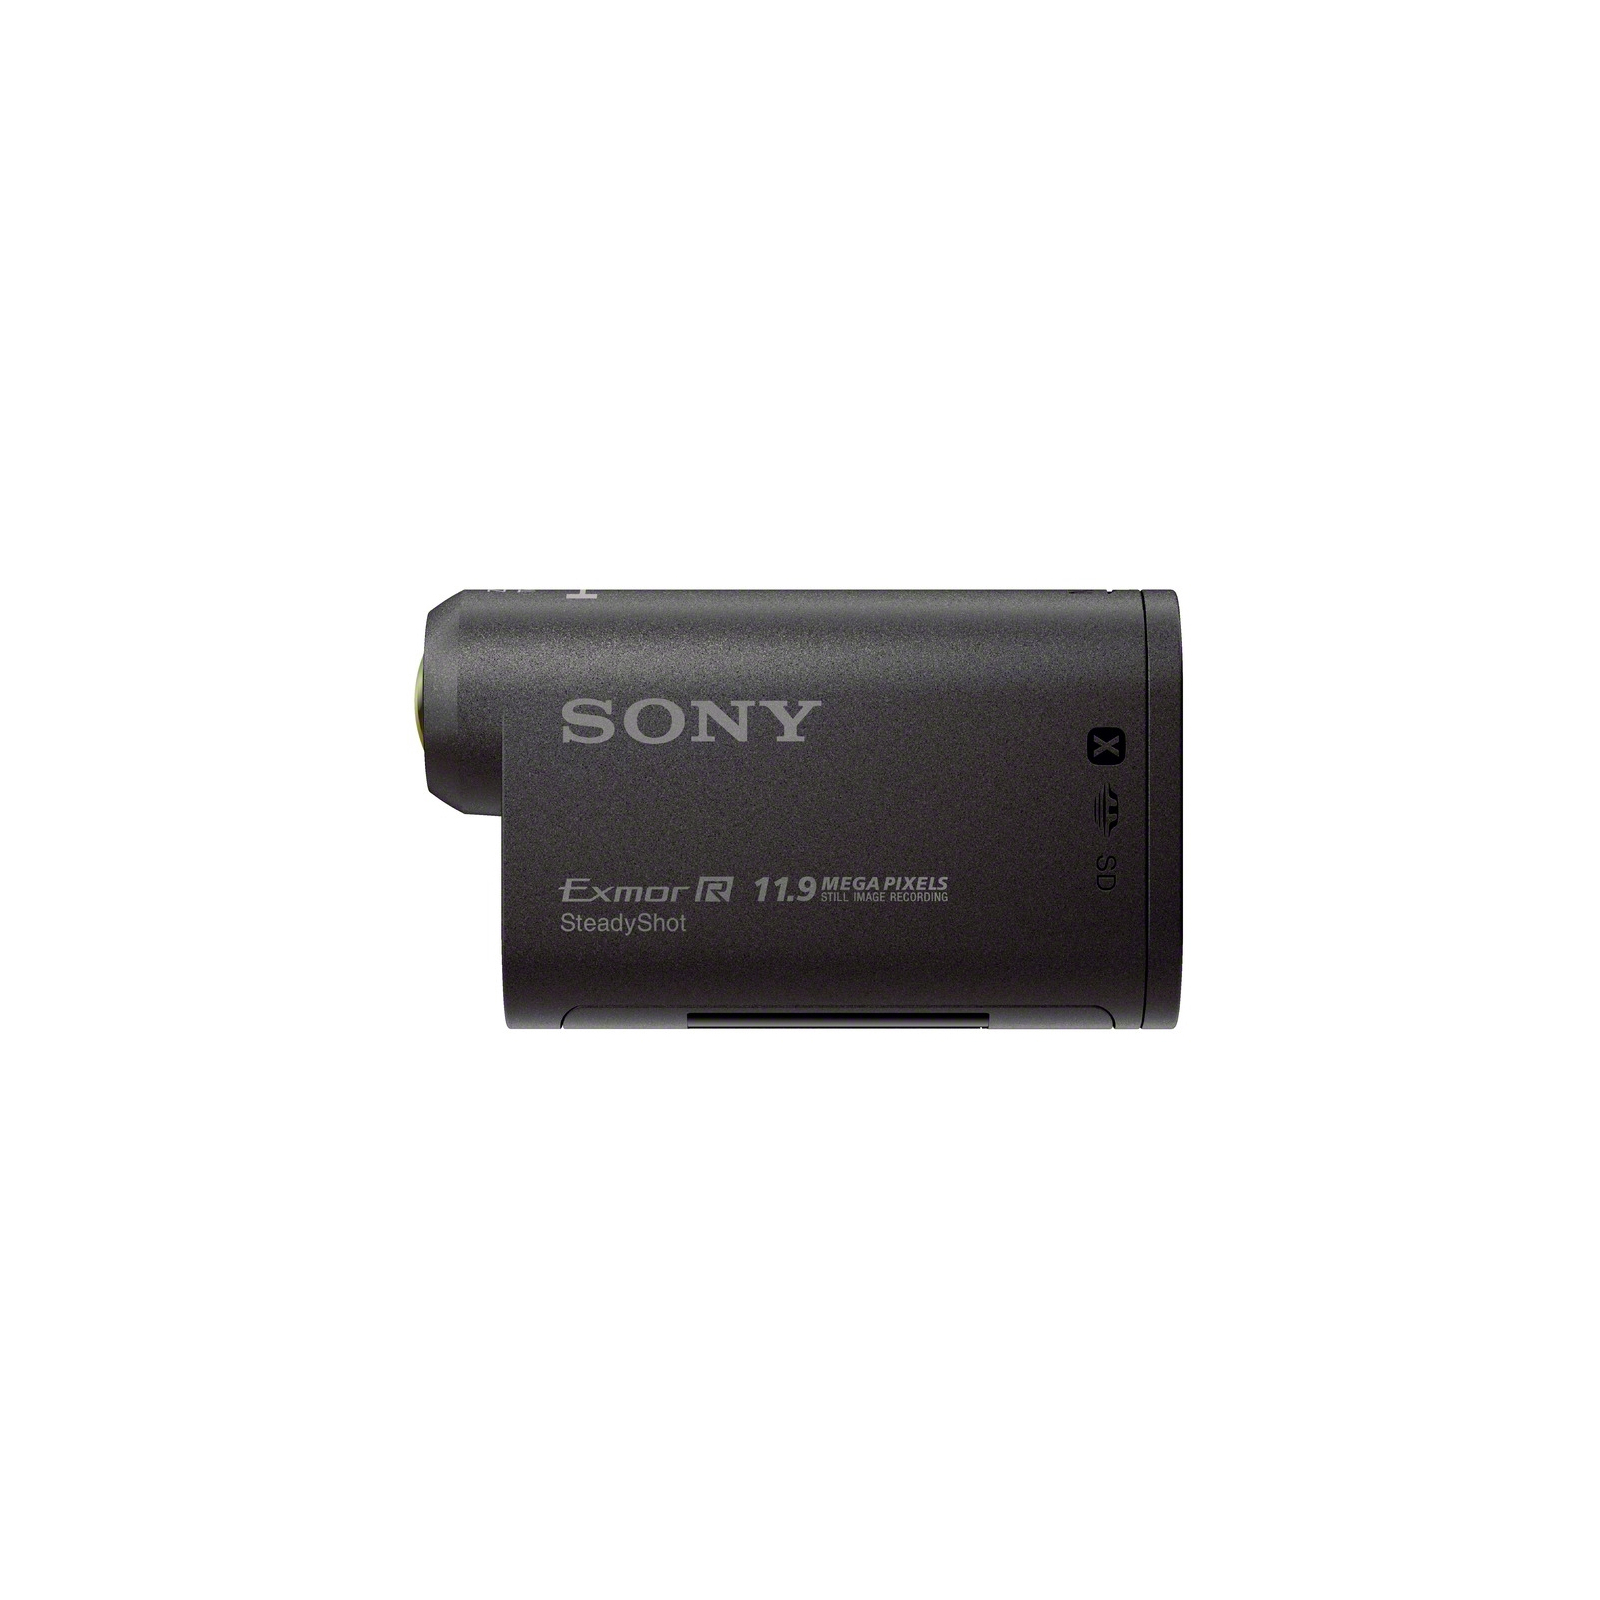 Екшн-камера Sony HDR-AS20 (HDRAS20B.CEN) зображення 3